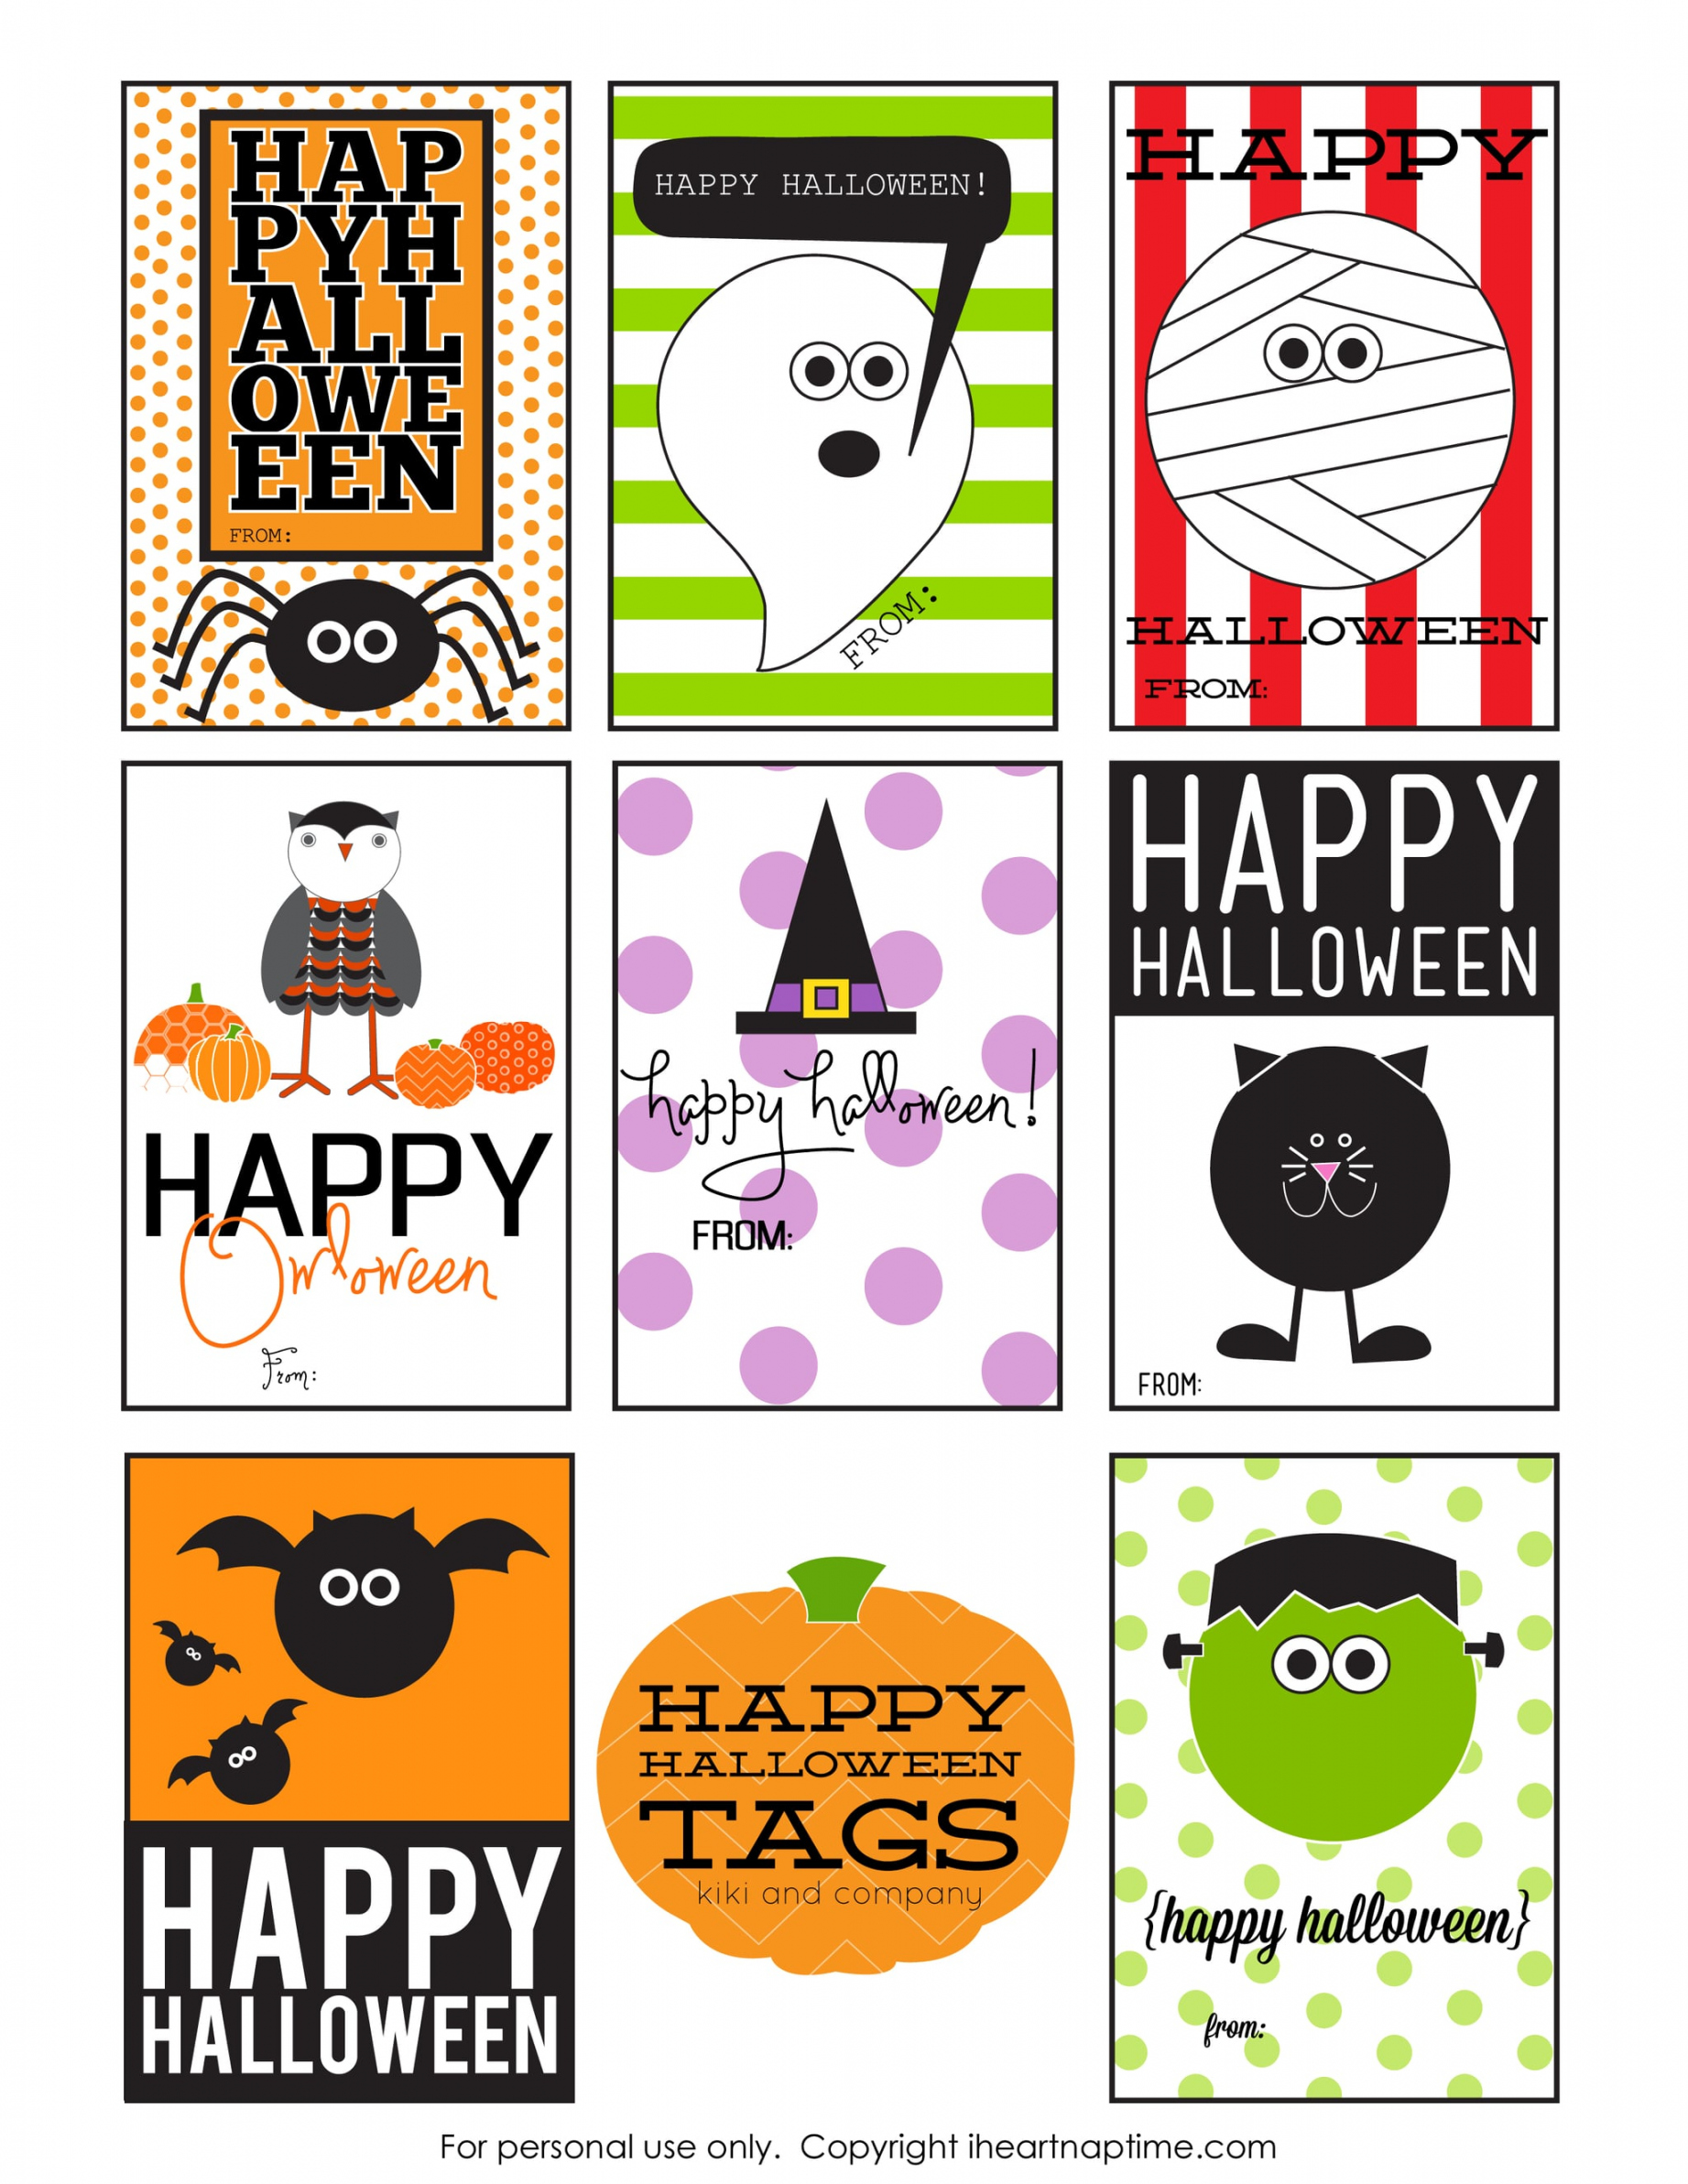 Free Printable Halloween Gift Tags - Printable - Free Printable Halloween Gift Tags  POPSUGAR Smart Living